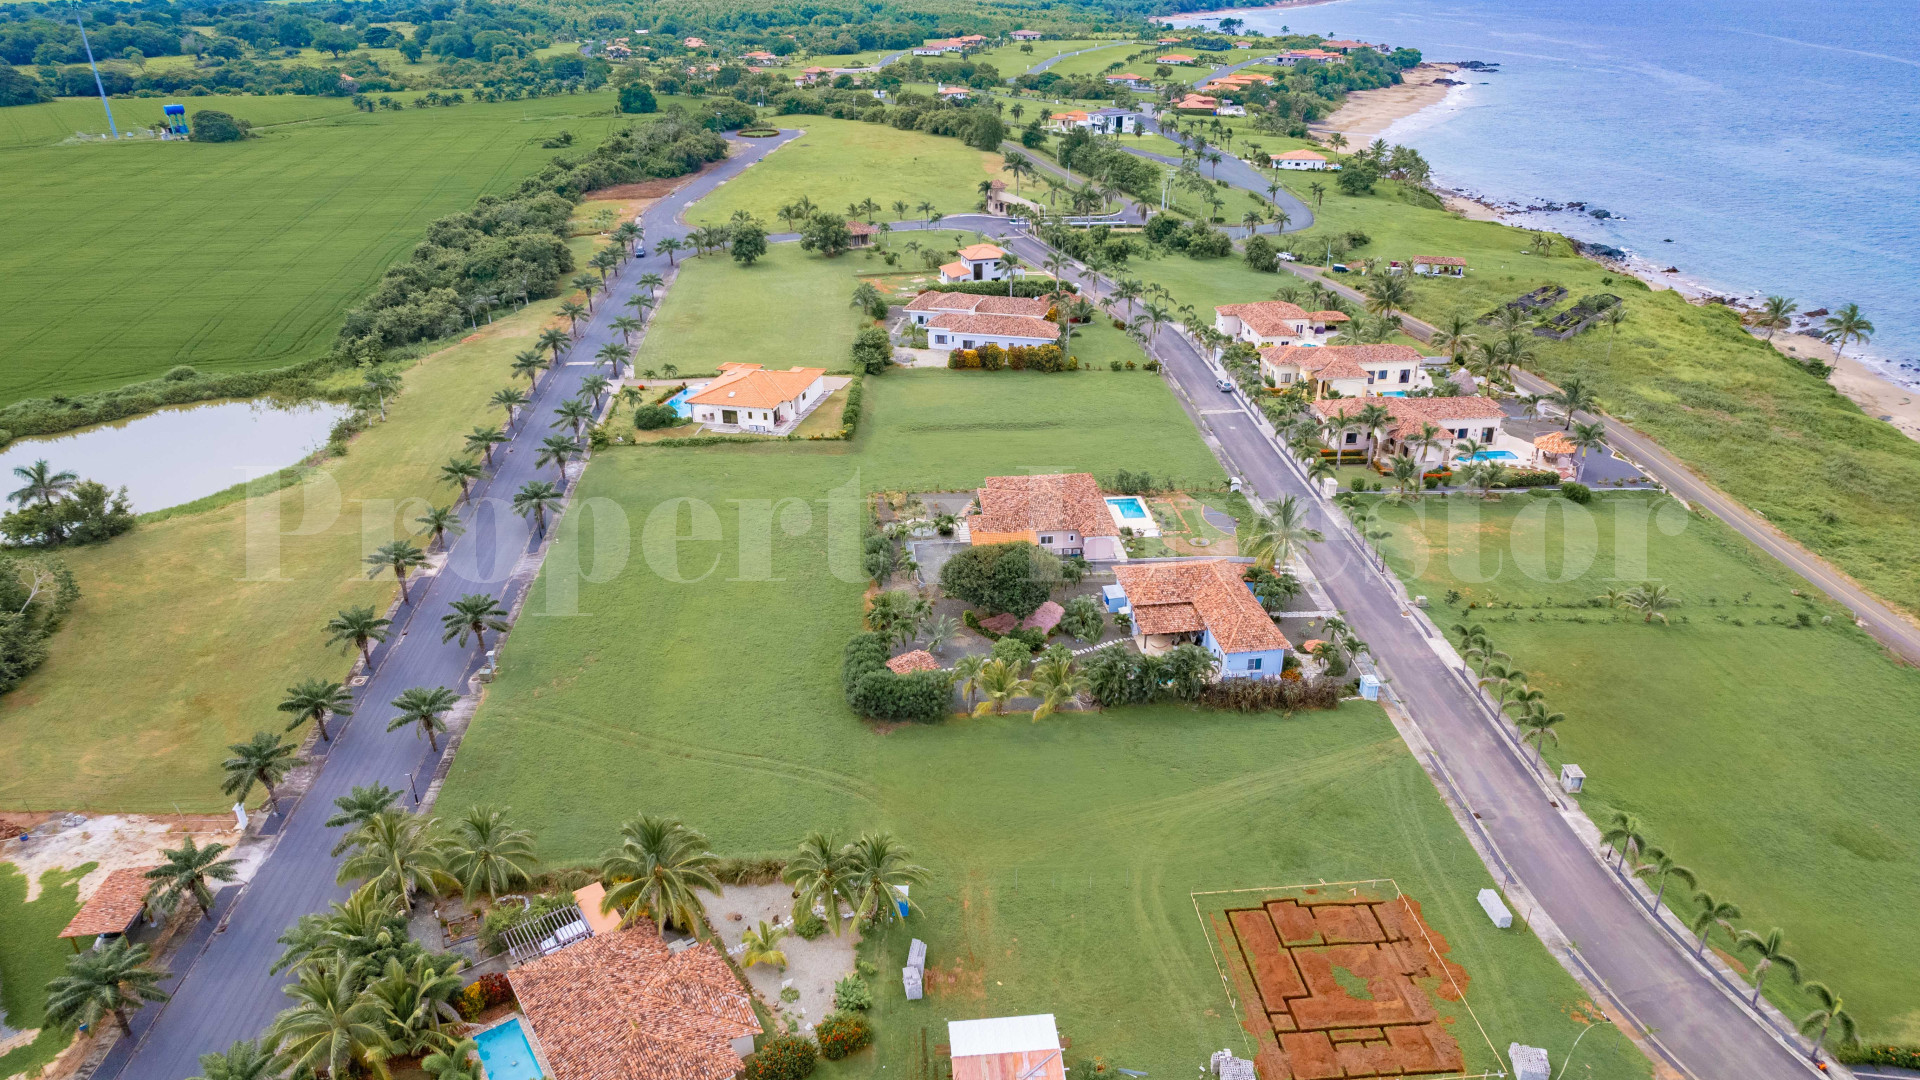 Продаются участки земли под жилую застройку 11-13 соток с видом на океан в Педаси, Панама